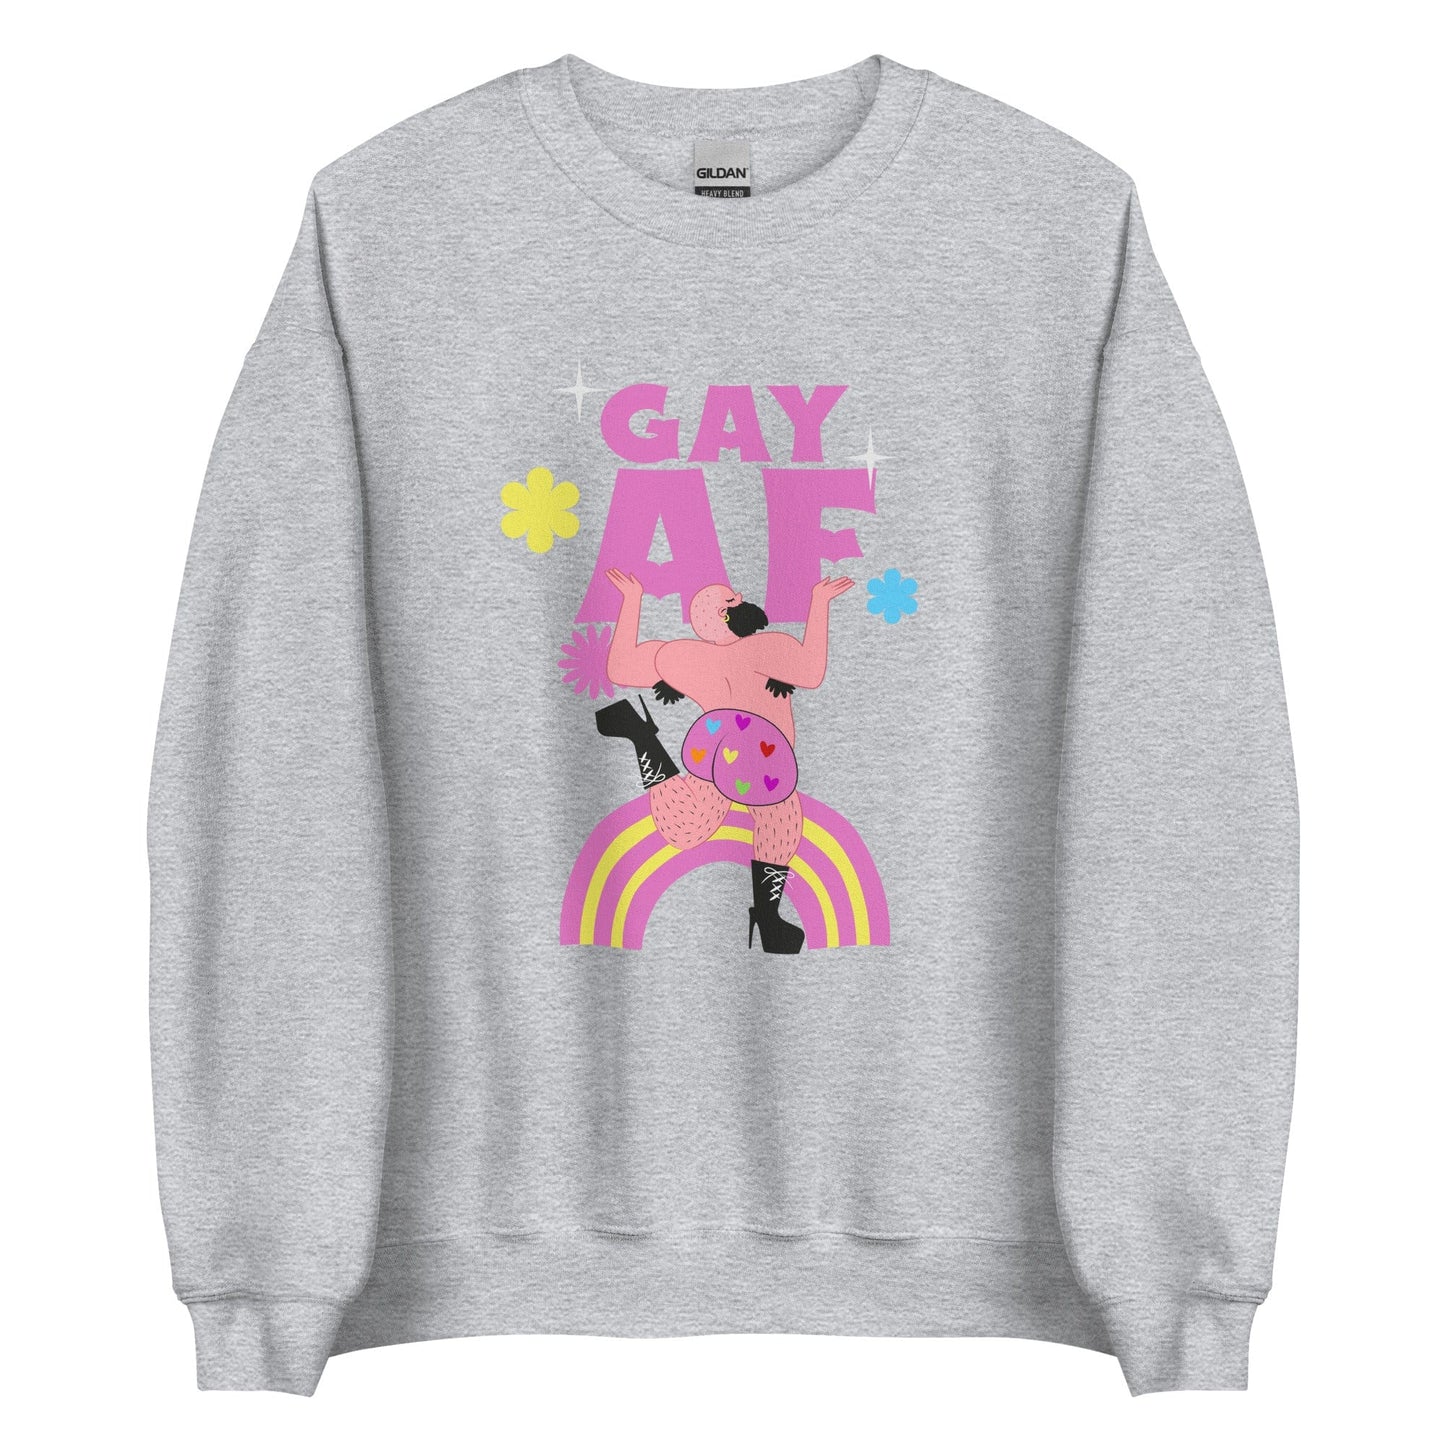 queer-gay-af-grey-sweatshirt-lgbtq-by-feminist-define